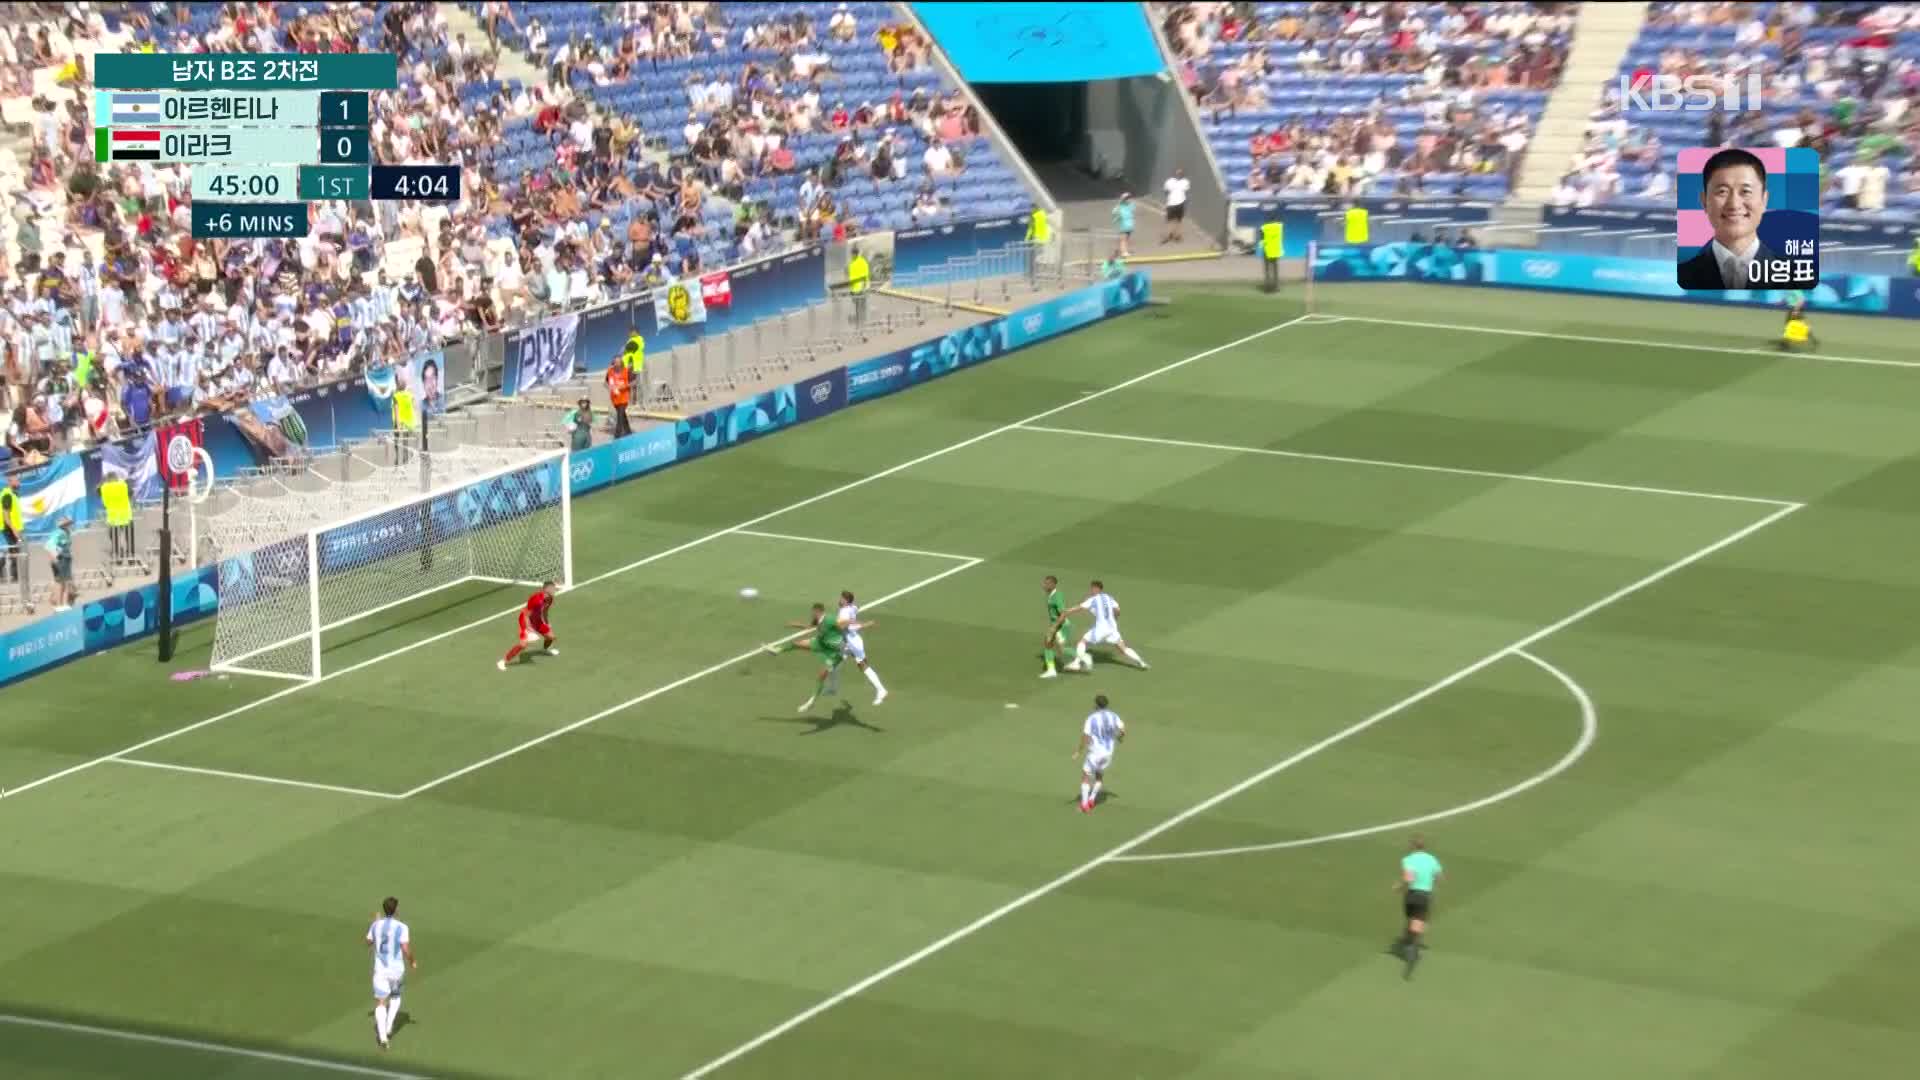 [영상] 축구 남자 2차전 이라크 아르헨티나에 역습슛…이변은 있었다